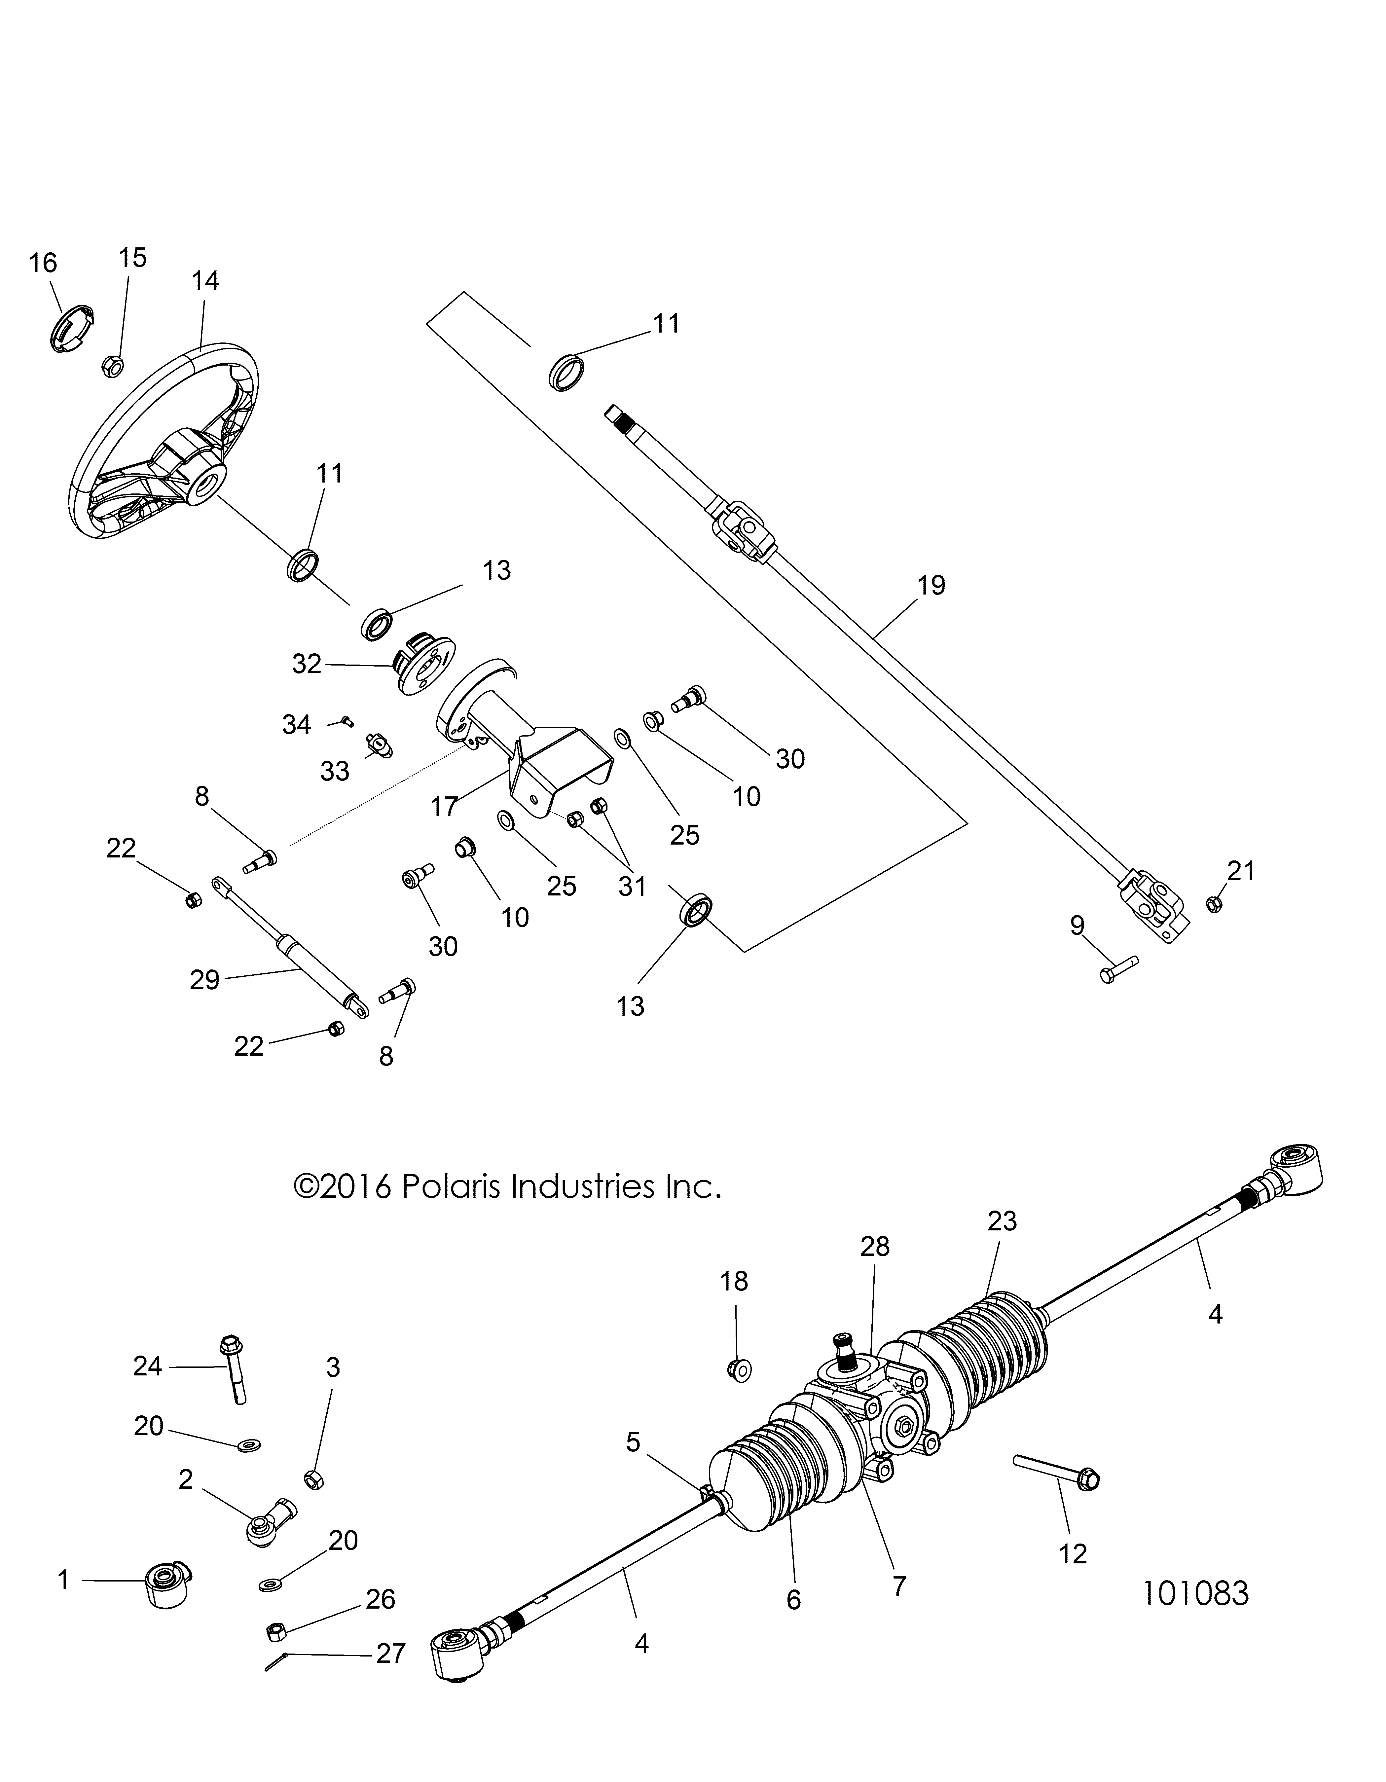 Foto diagrama Polaris que contem a peça 5632295-458